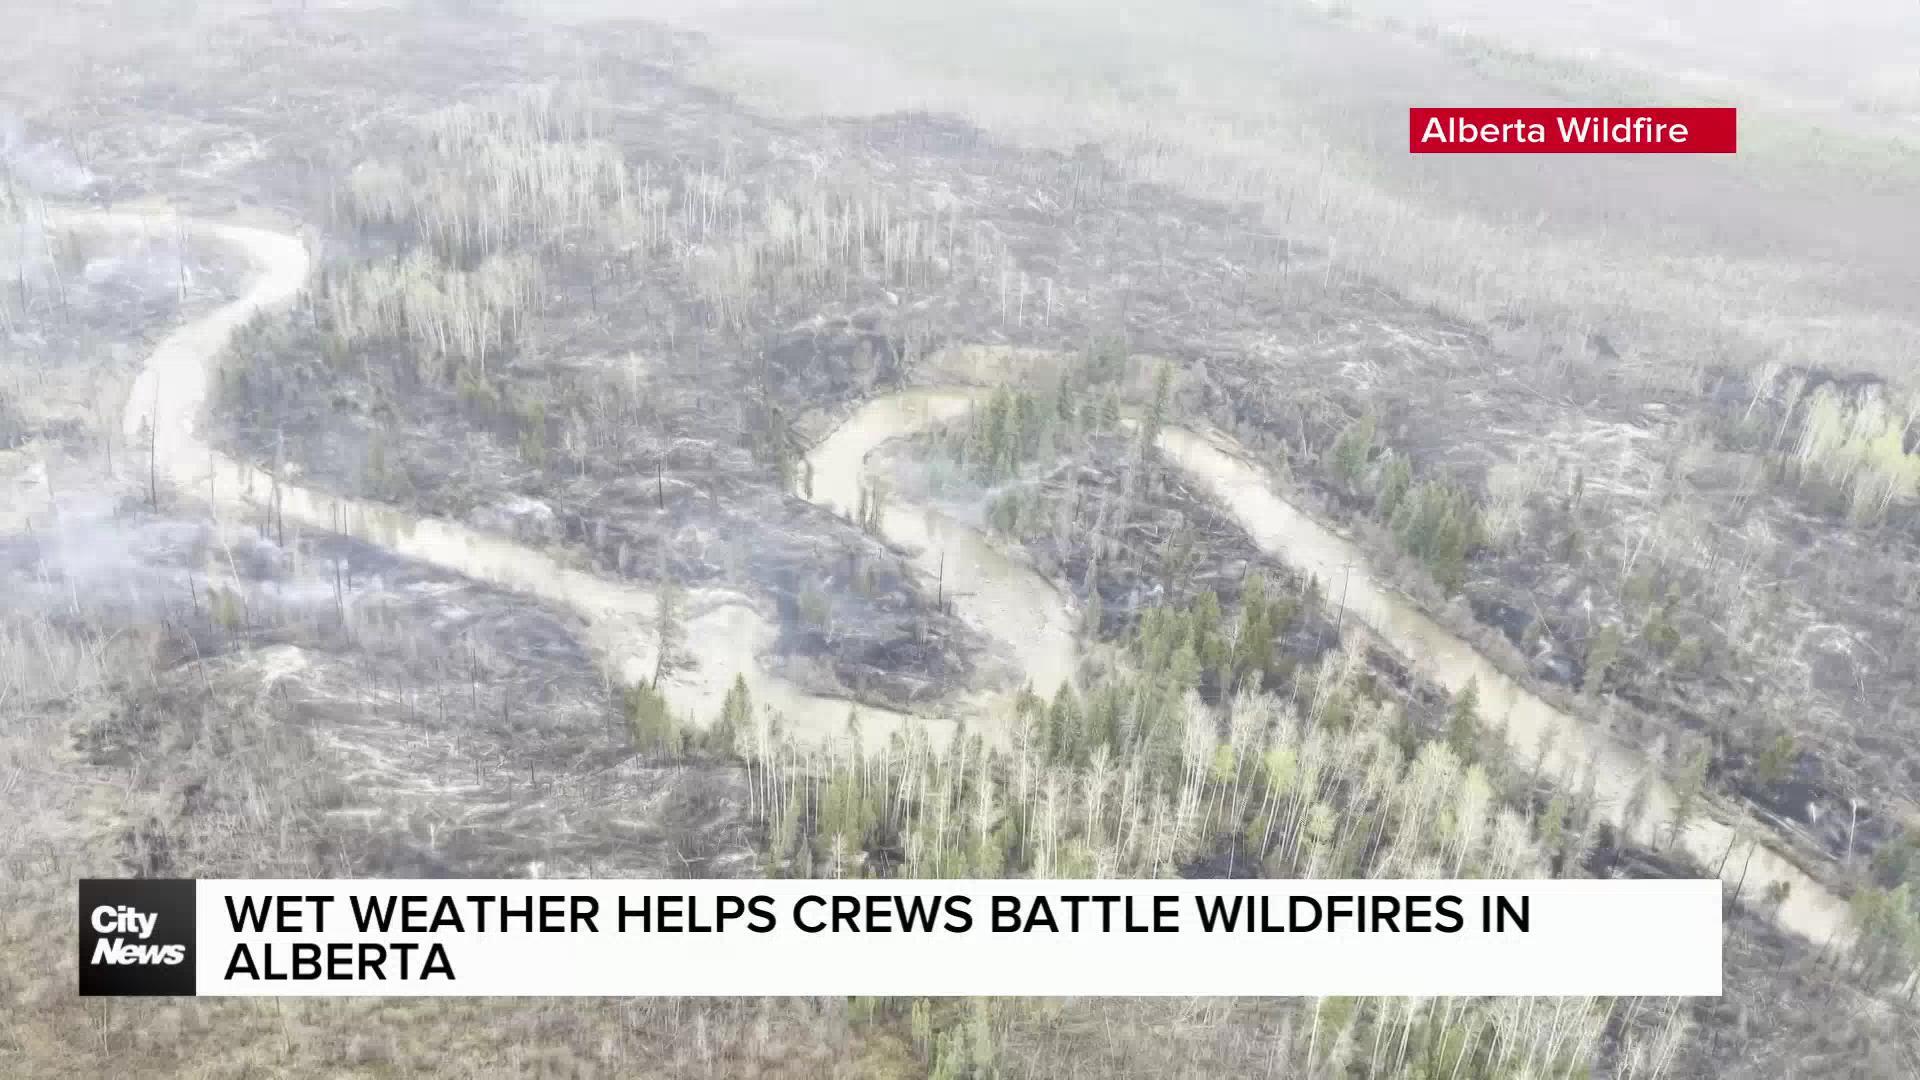 Wet weather helps crews battle wildfires in Alberta